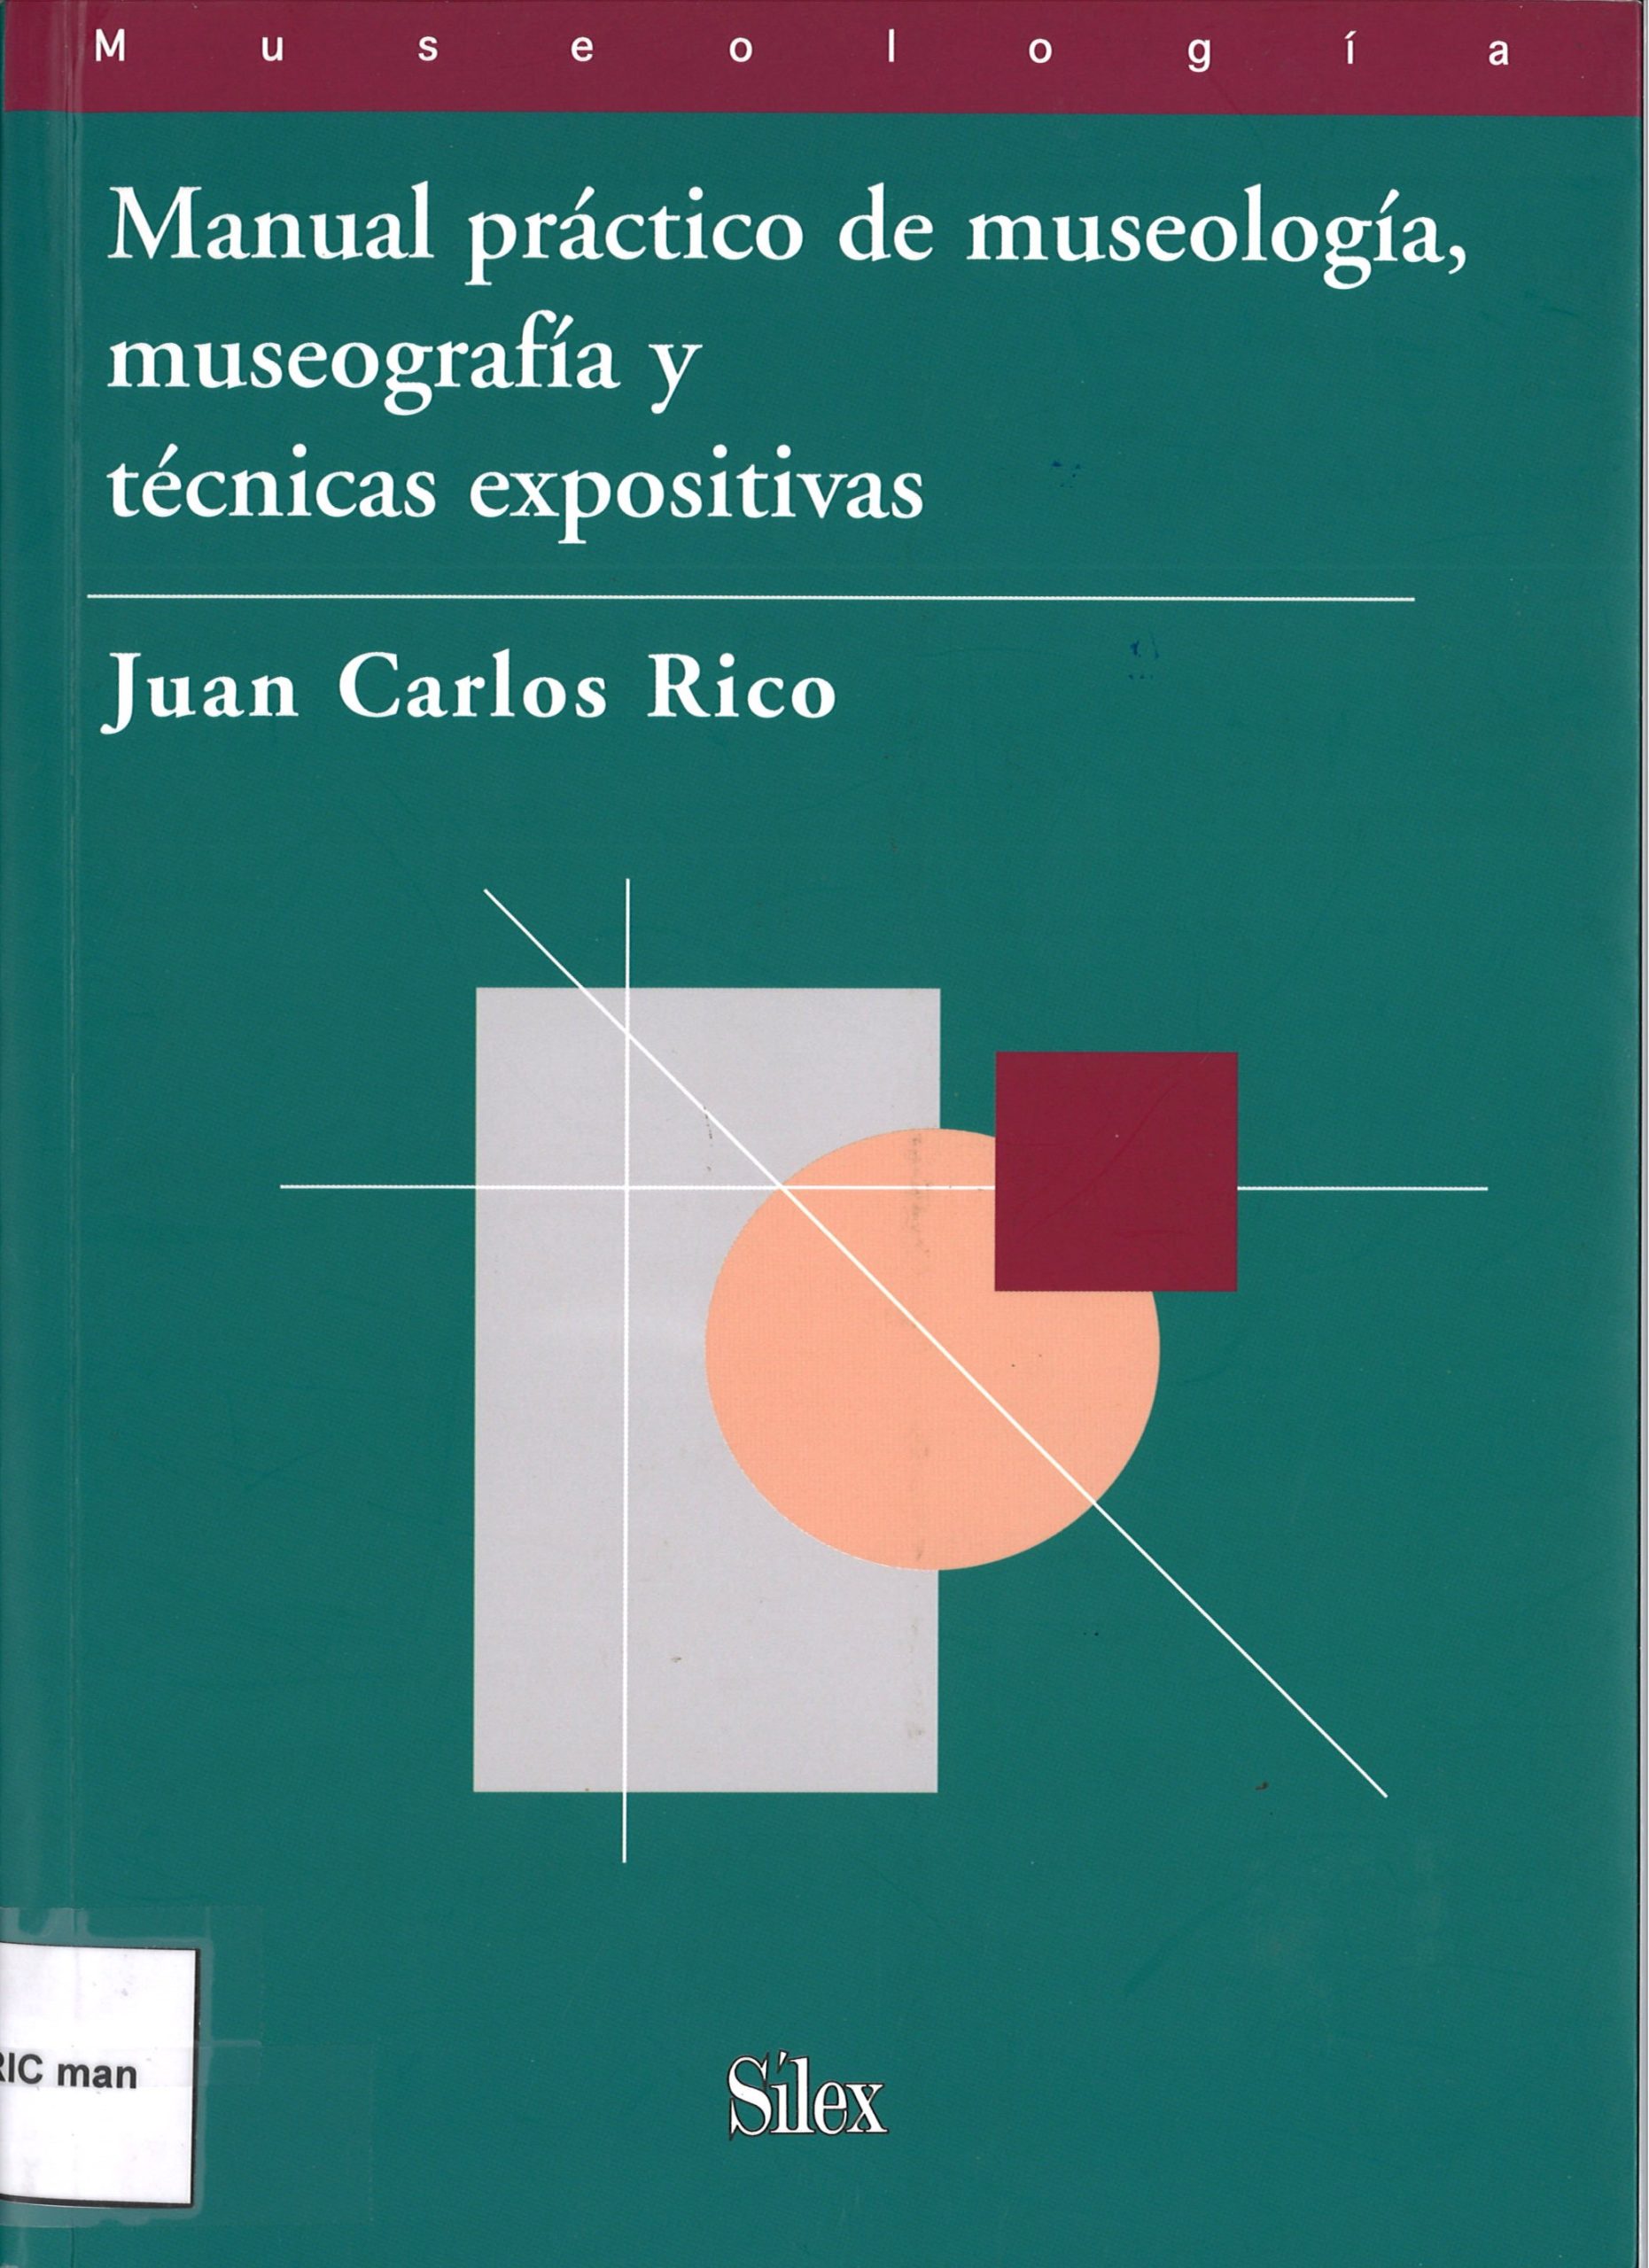 Manual práctico de museología, museografía y técnicas expositivas-Juan Carlos Rico-image